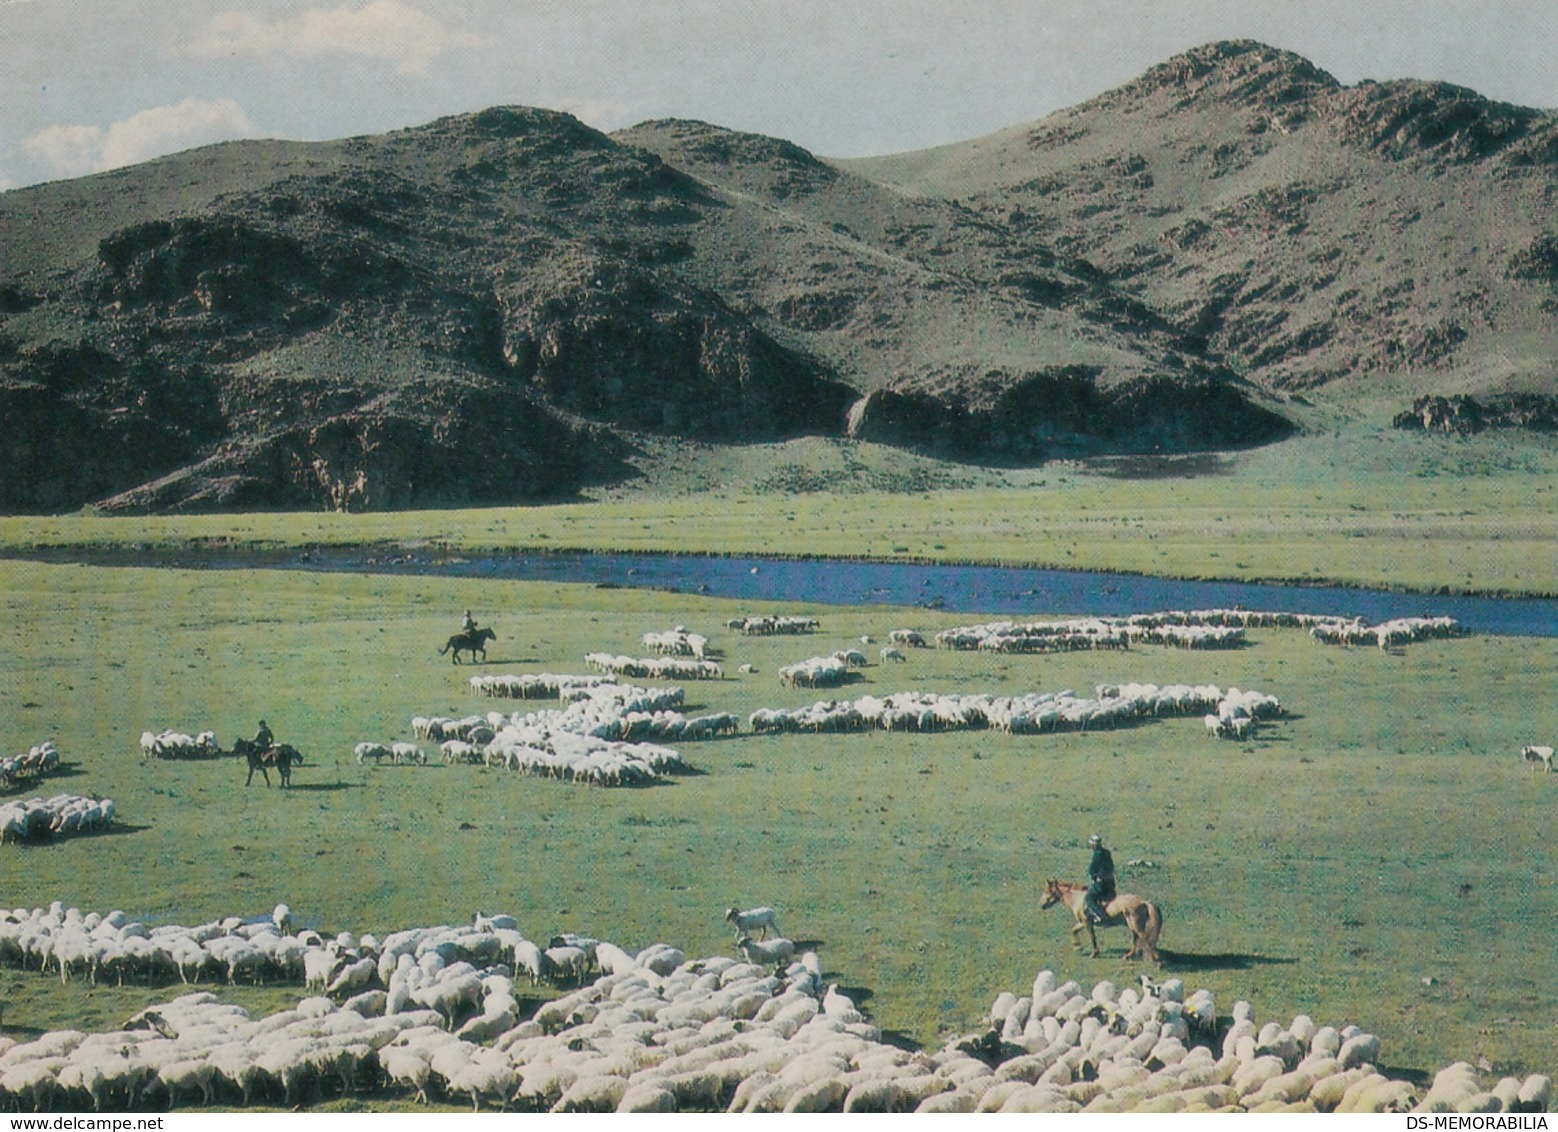 Mongolia Sheep Herds - Mongolia